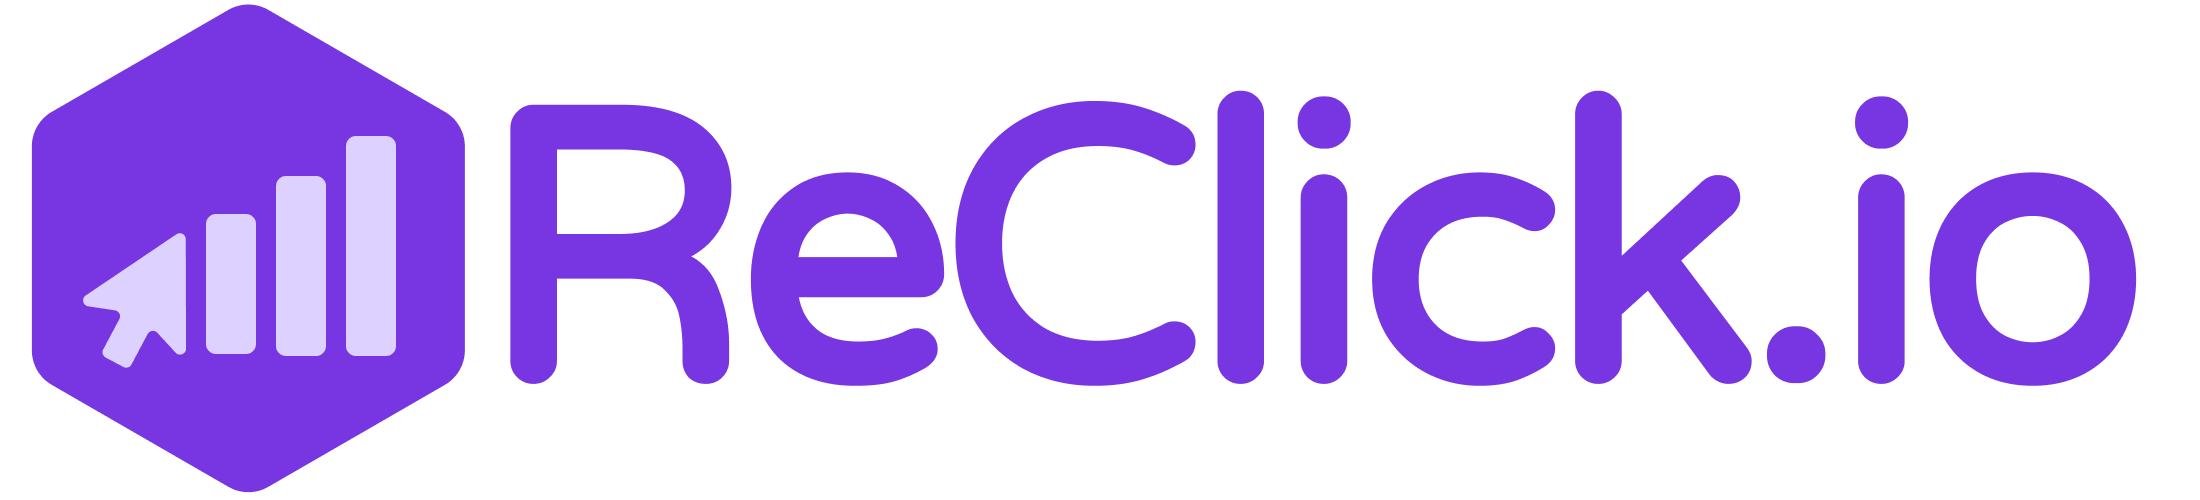 reclick logo